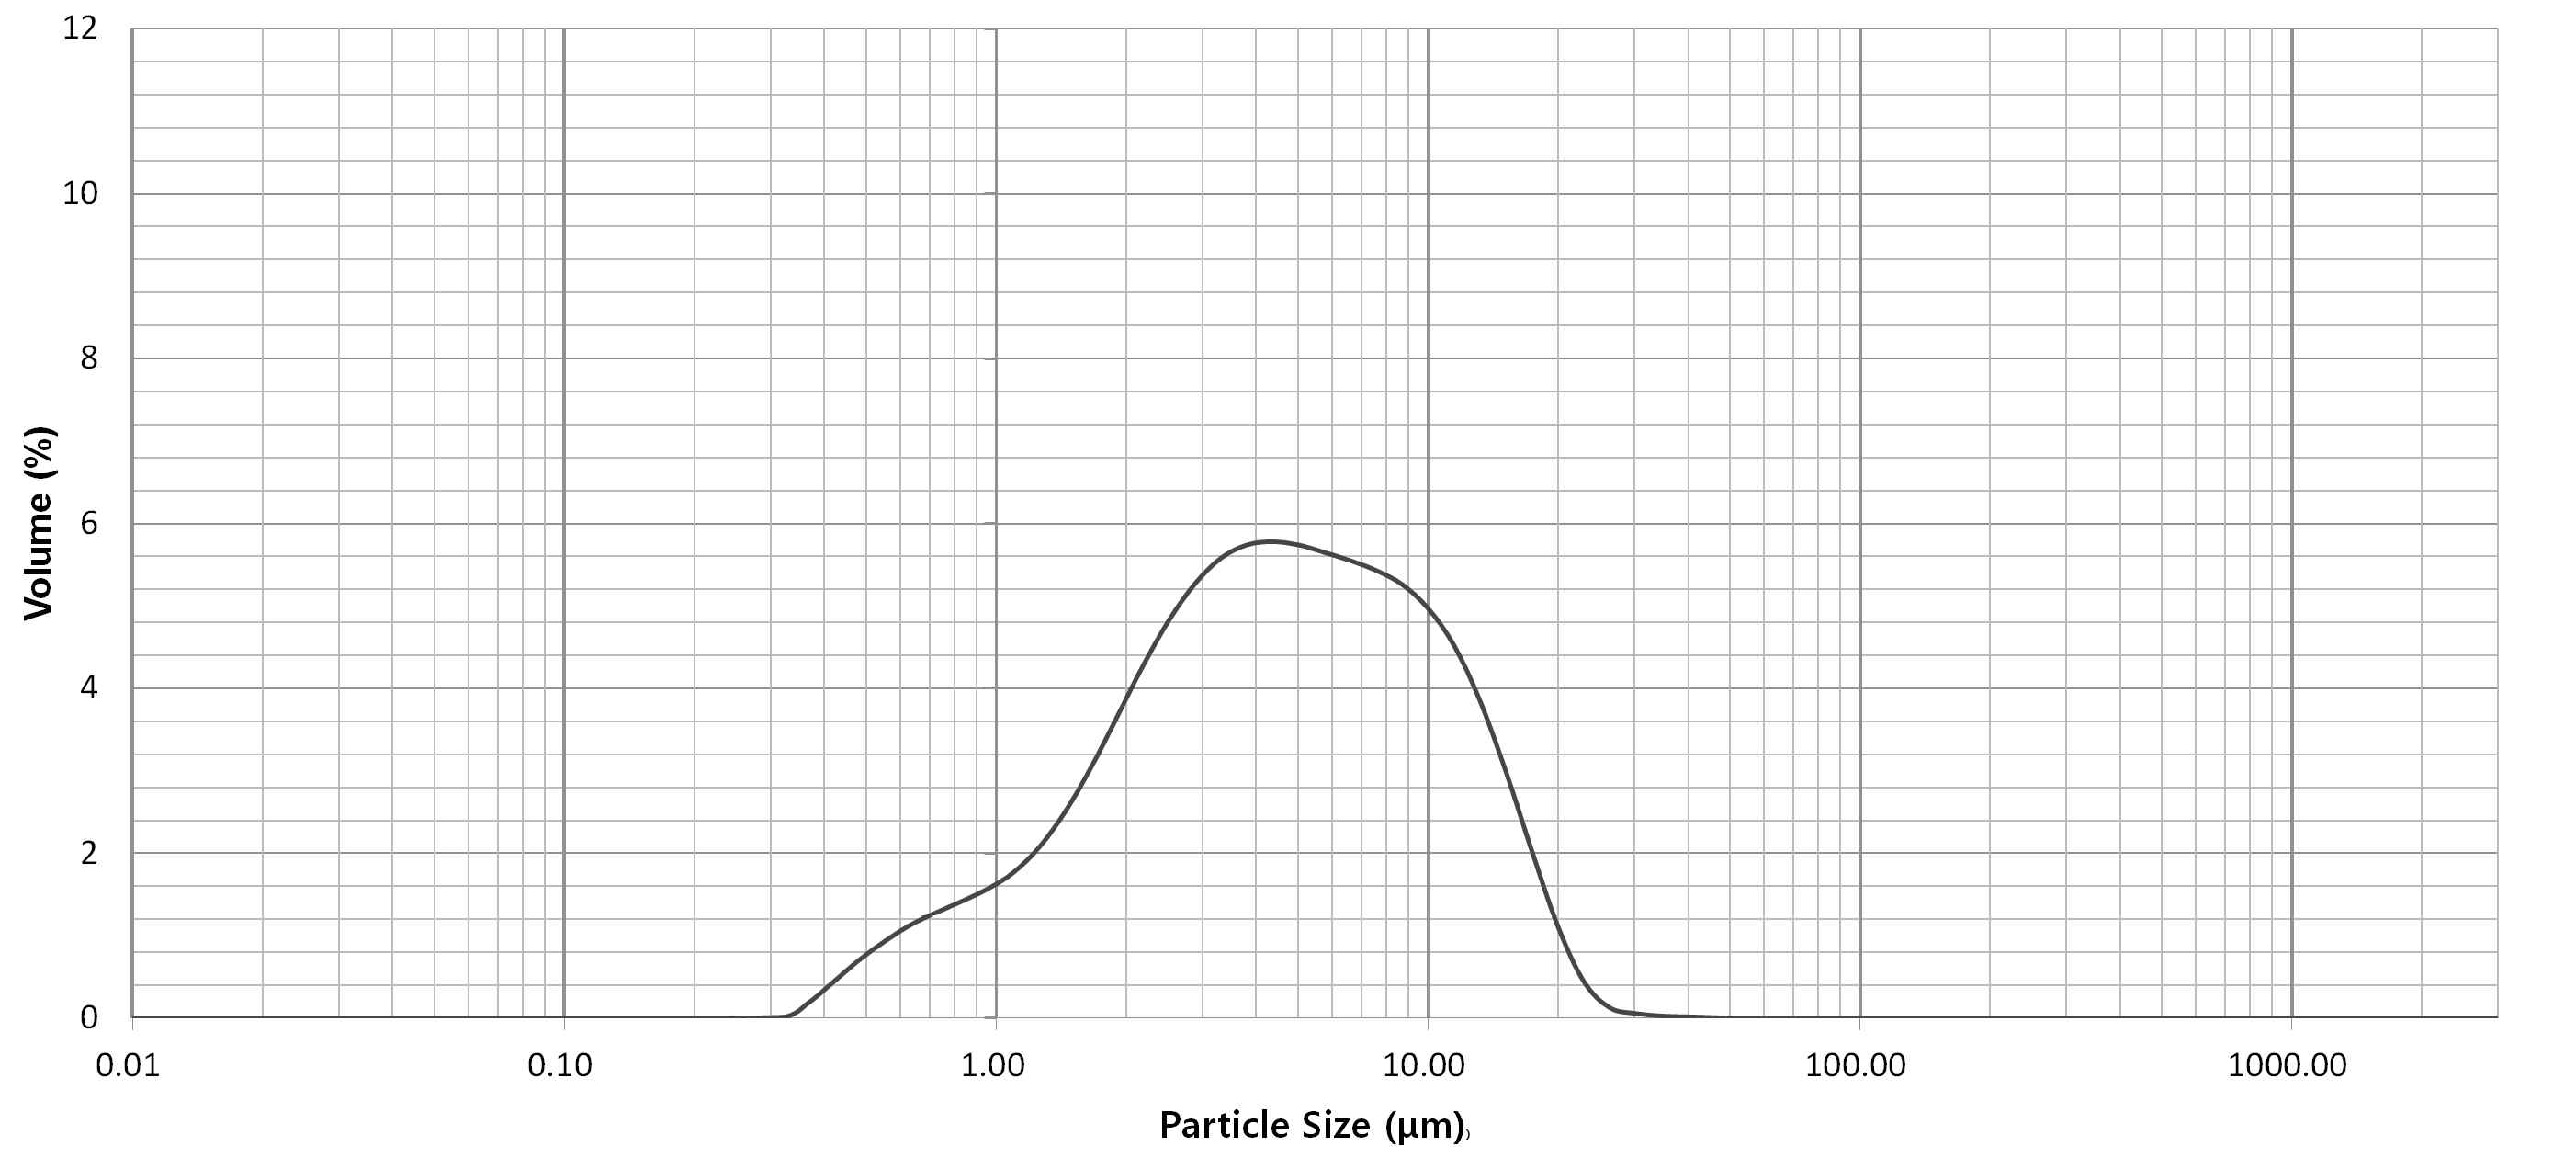 카올린의 Particle Size Distribution